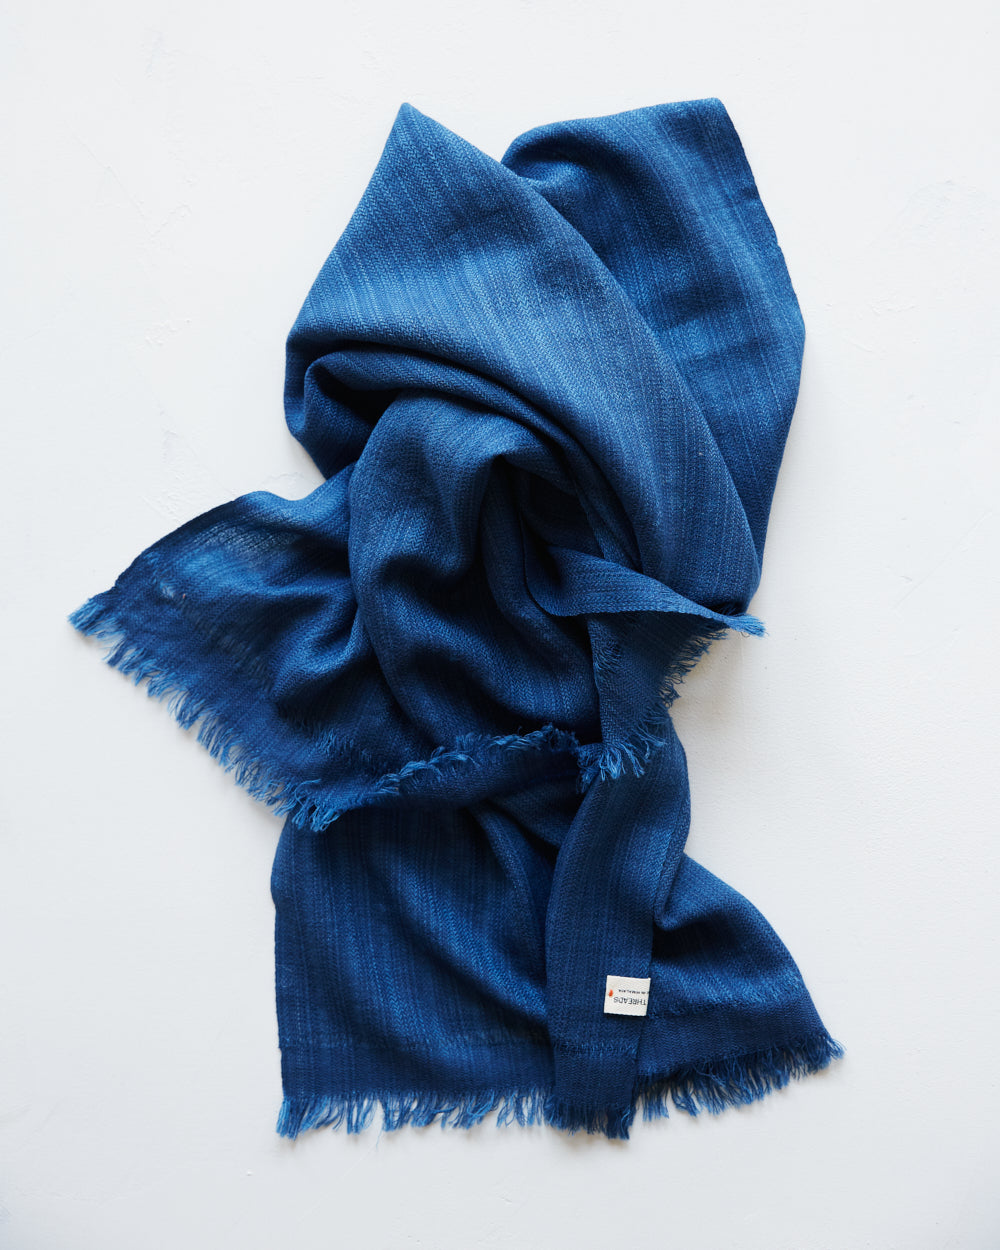 "Pema" stor sjal i merinoull från Västbengalen